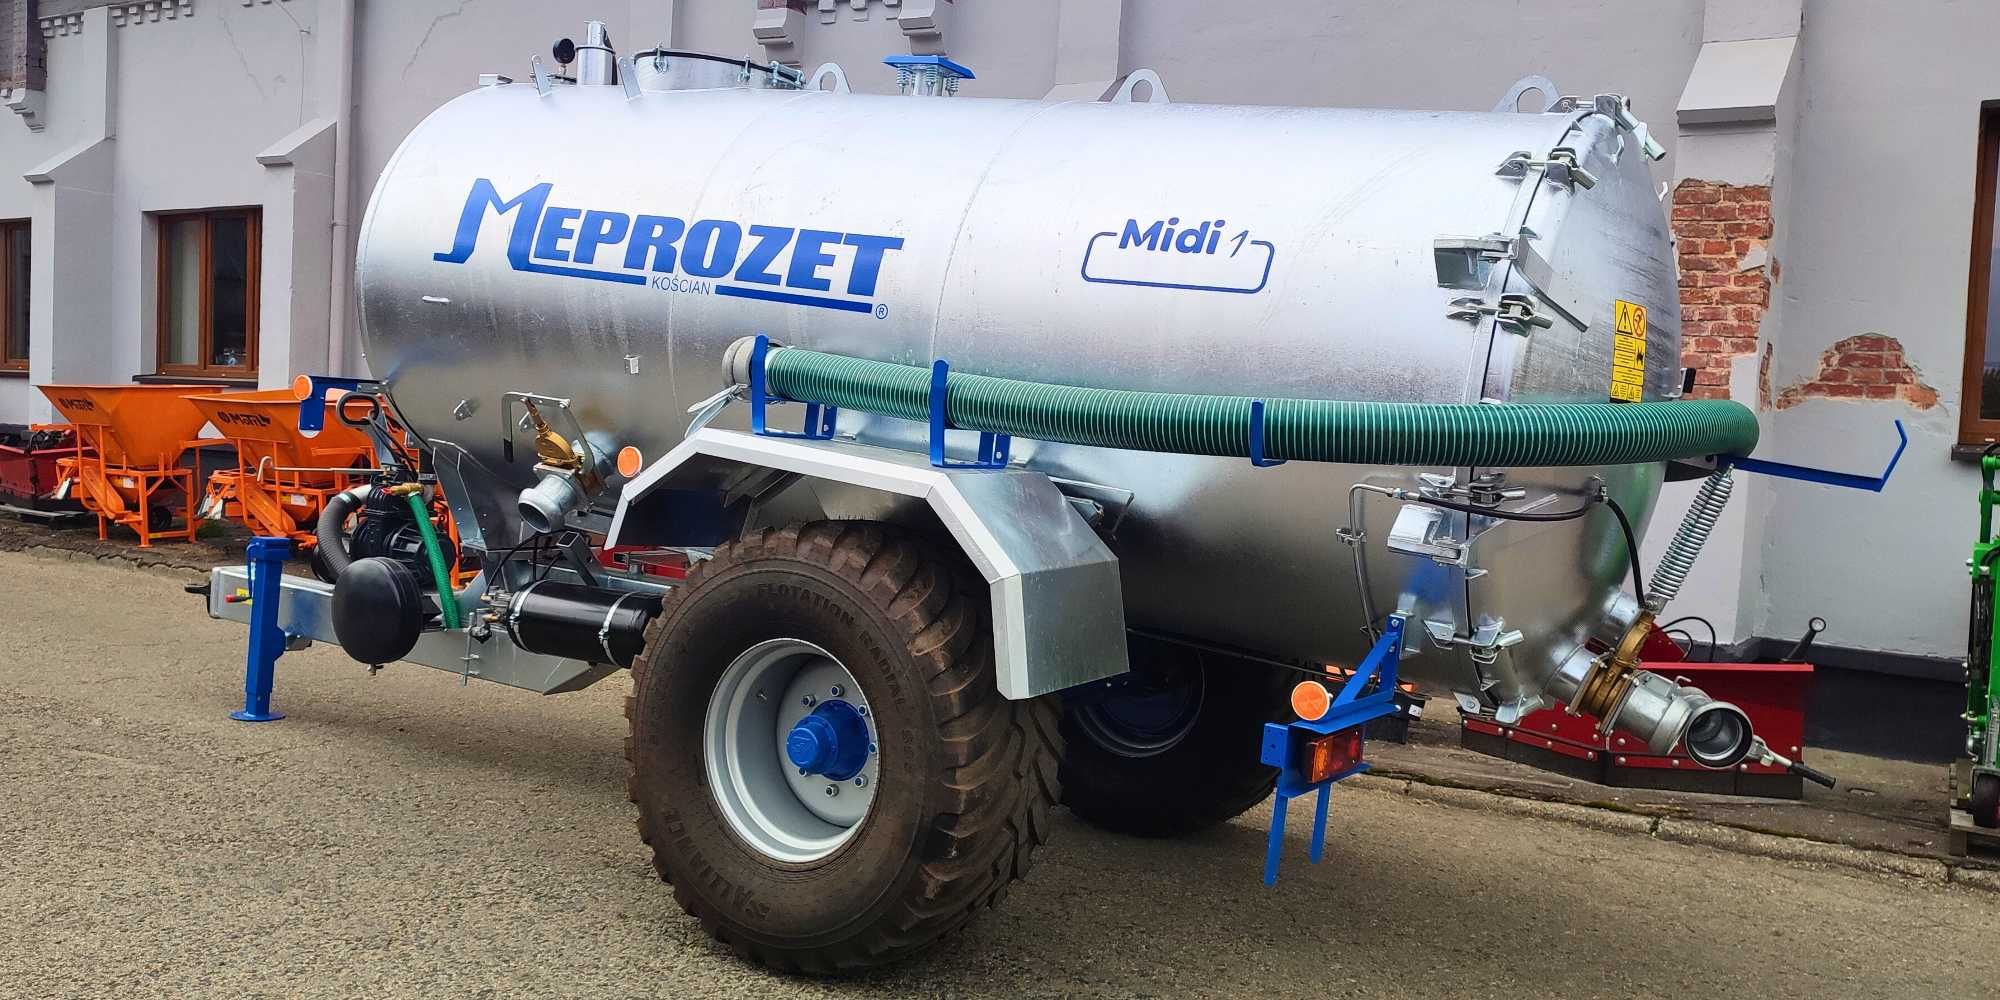 Beczka MEPROZET 7000l wóz asenizacyjny szambo woda Od ręki Transport